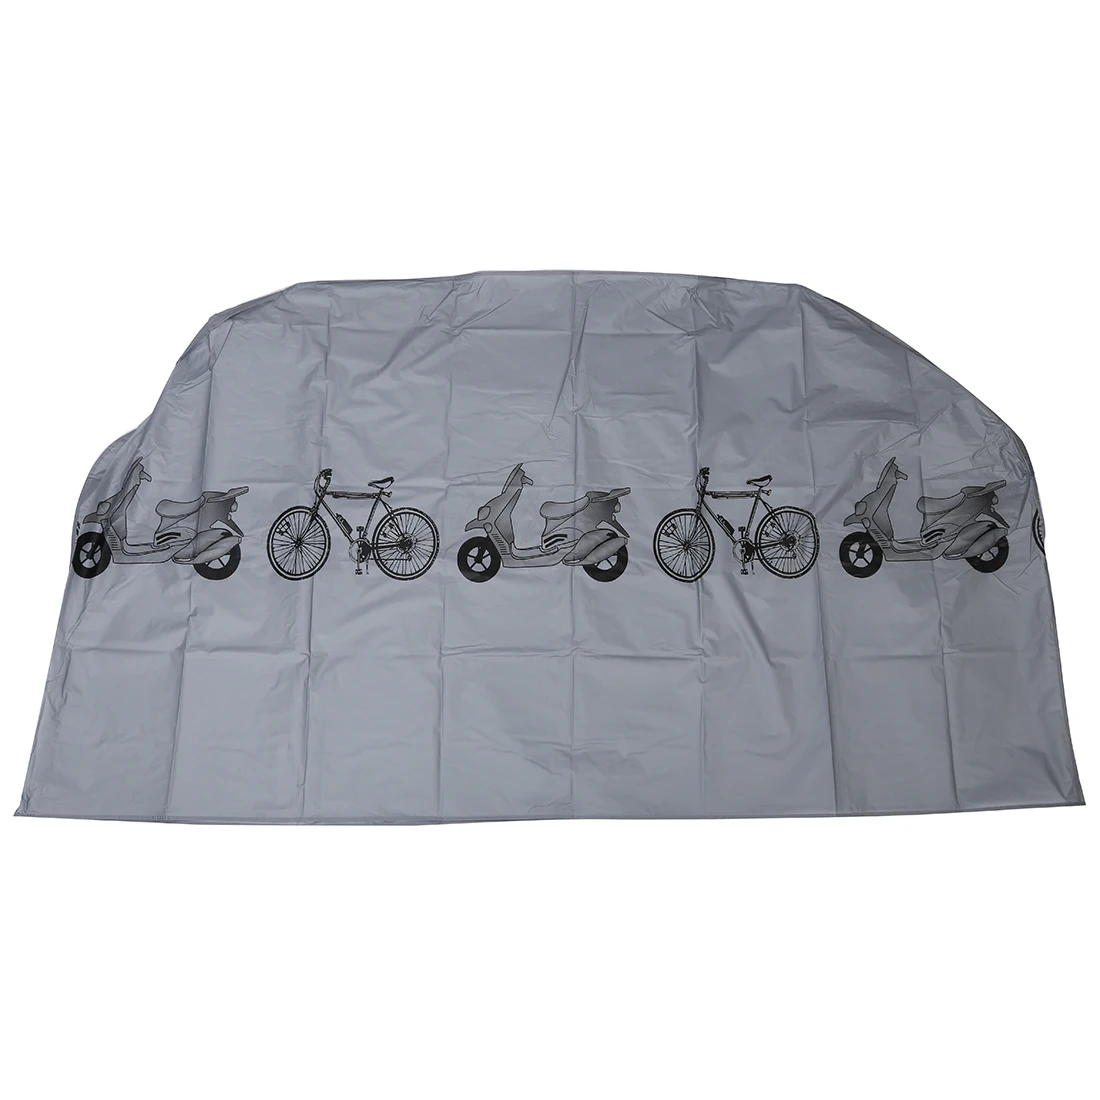 UPPERX велосипед велосипедный спорт Велоспорт дождь и пыли Защитная крышка водостойкая защита гараж